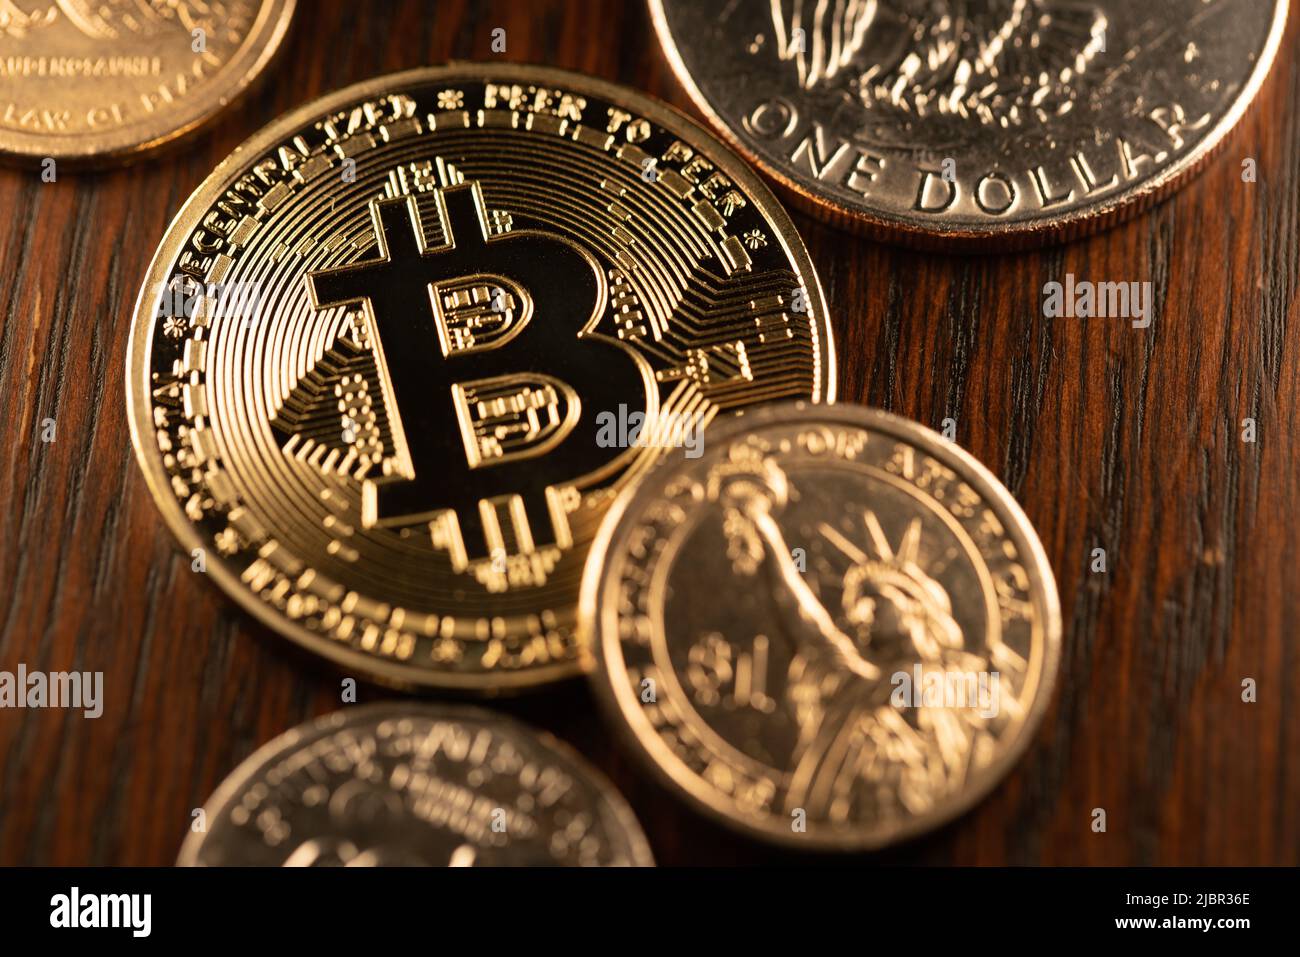 Dollarmünzen, die einen Goldbitcoin umgeben. Digitale Krypto-Währung mit US-Dollar-Münzen. Handel und Preis von Crypto in USD Stockfoto